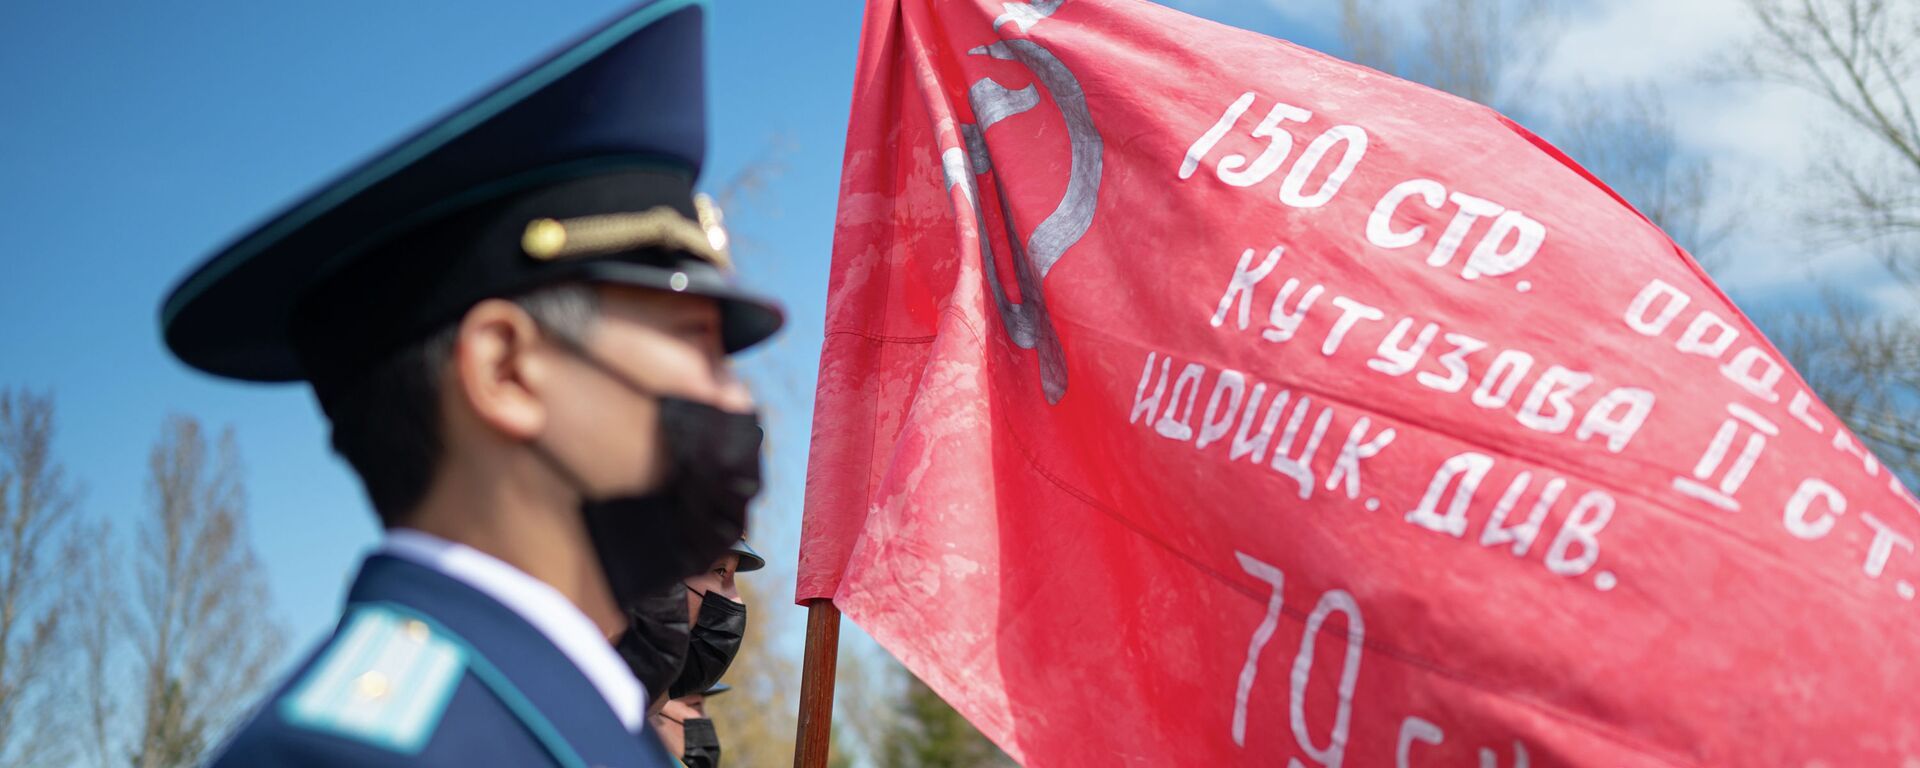 В Нур-Султане открыли Мемориал славы, посвященный героям Великой Отечественной войны - Sputnik Казахстан, 1920, 30.04.2021